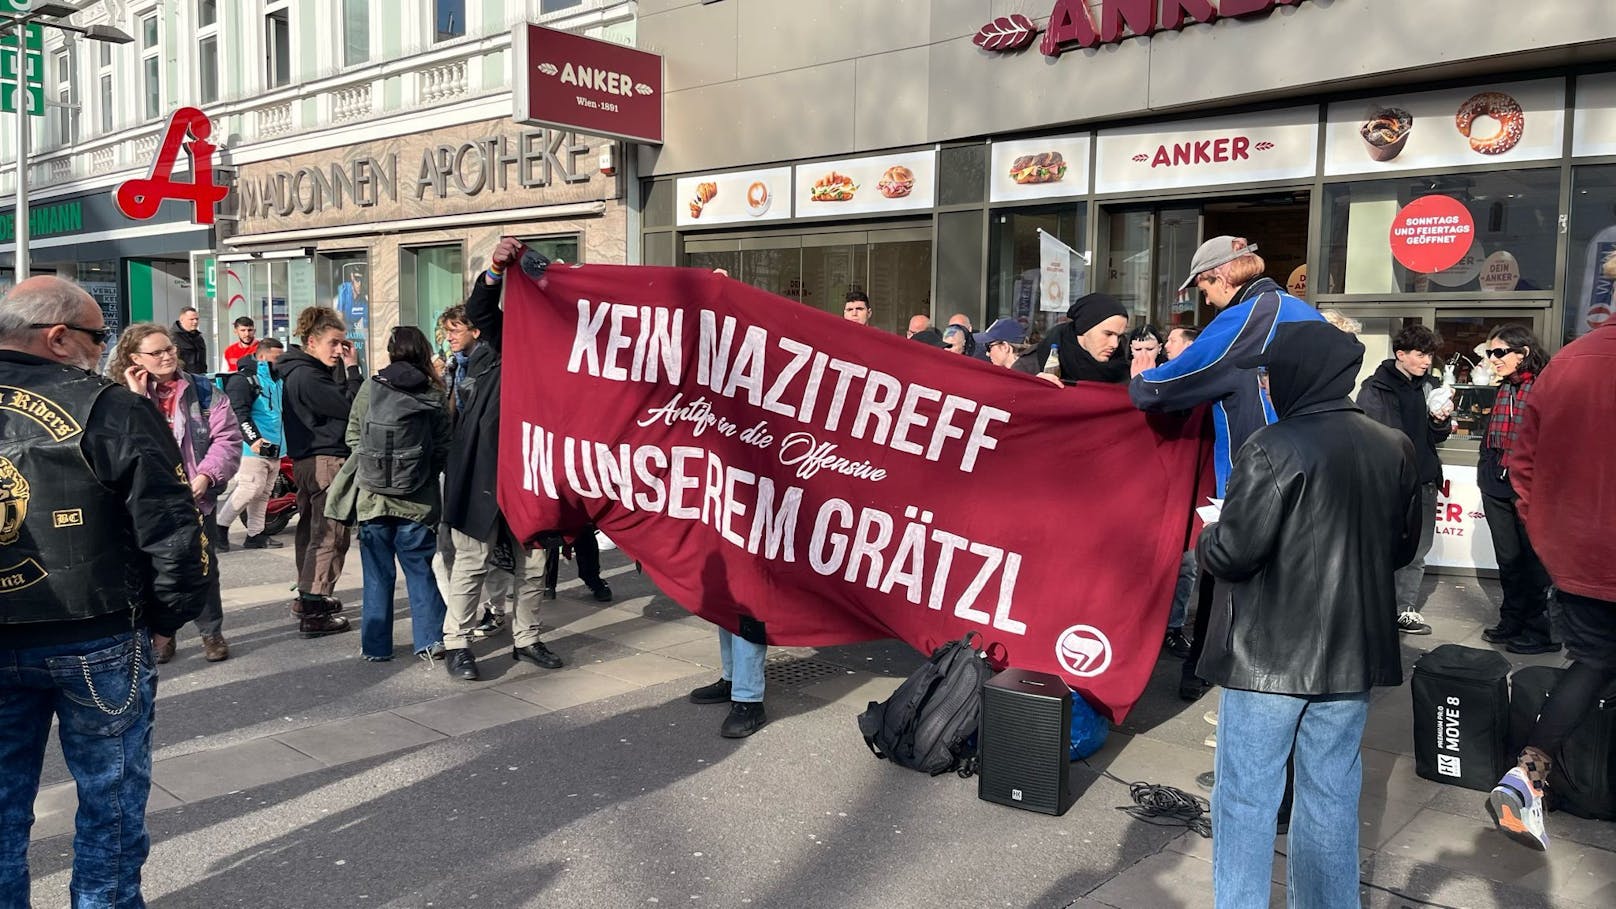 "Favoriten hat genug" – FPÖ-Kundgebung am Keplerplatz